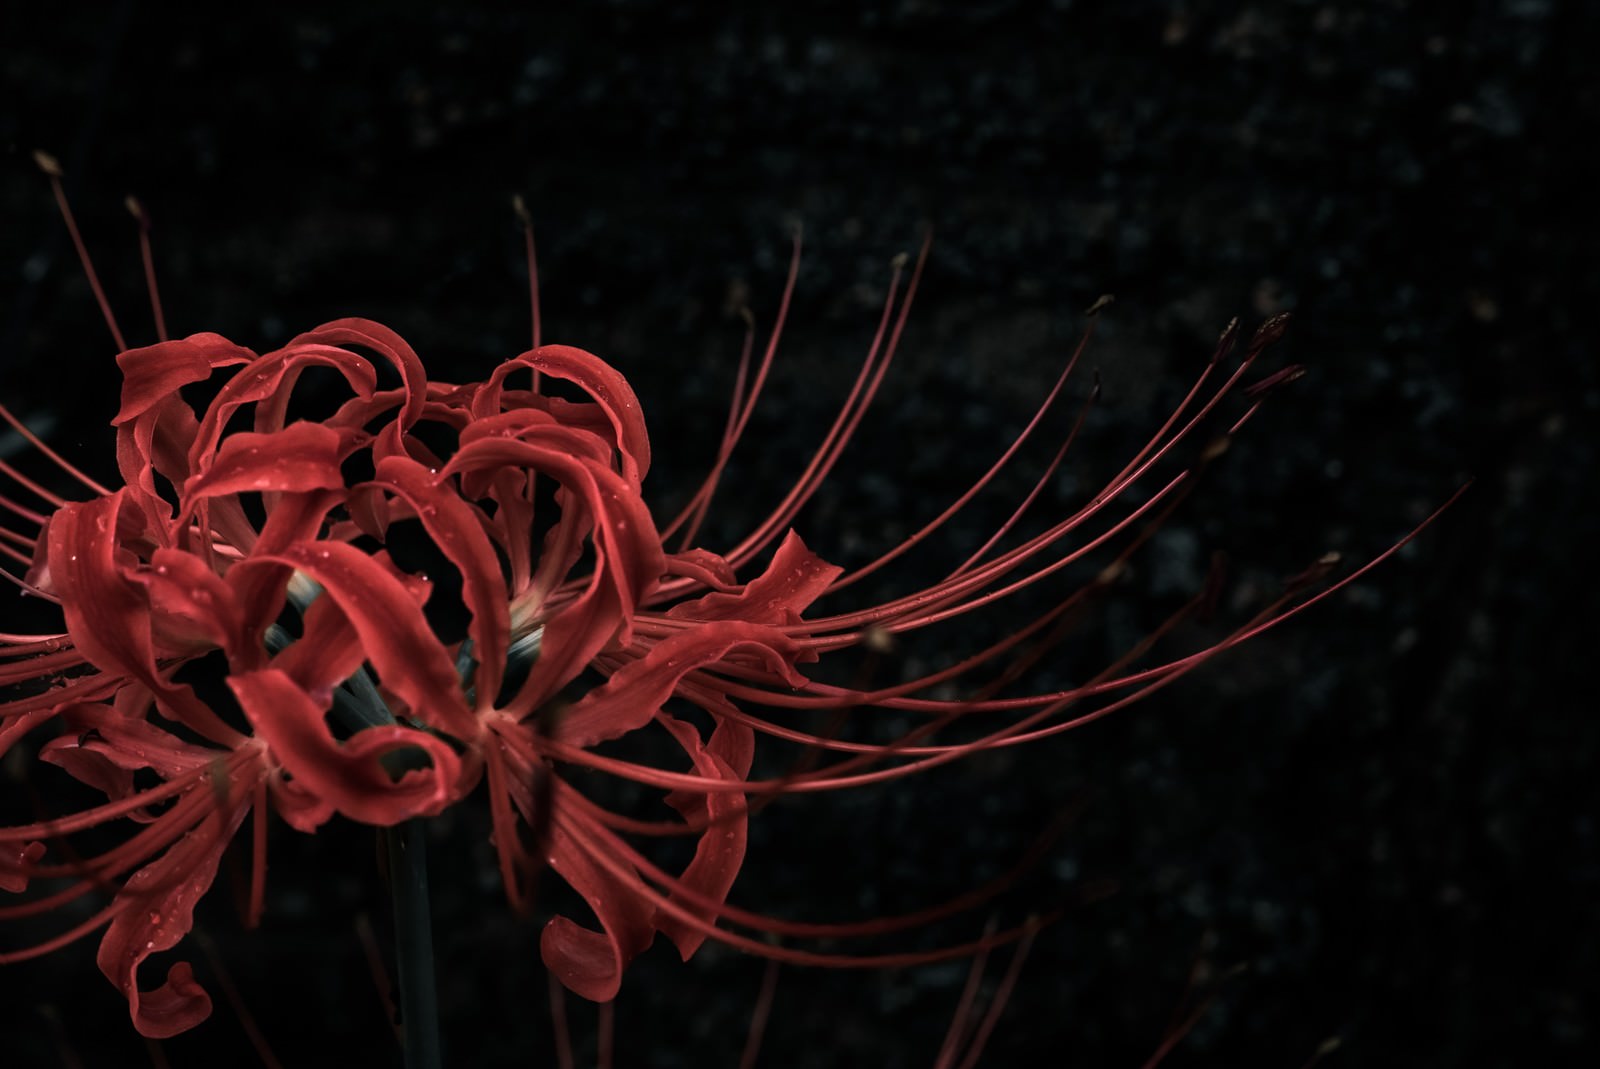 「暗闇に咲くヒガンバナ」の写真